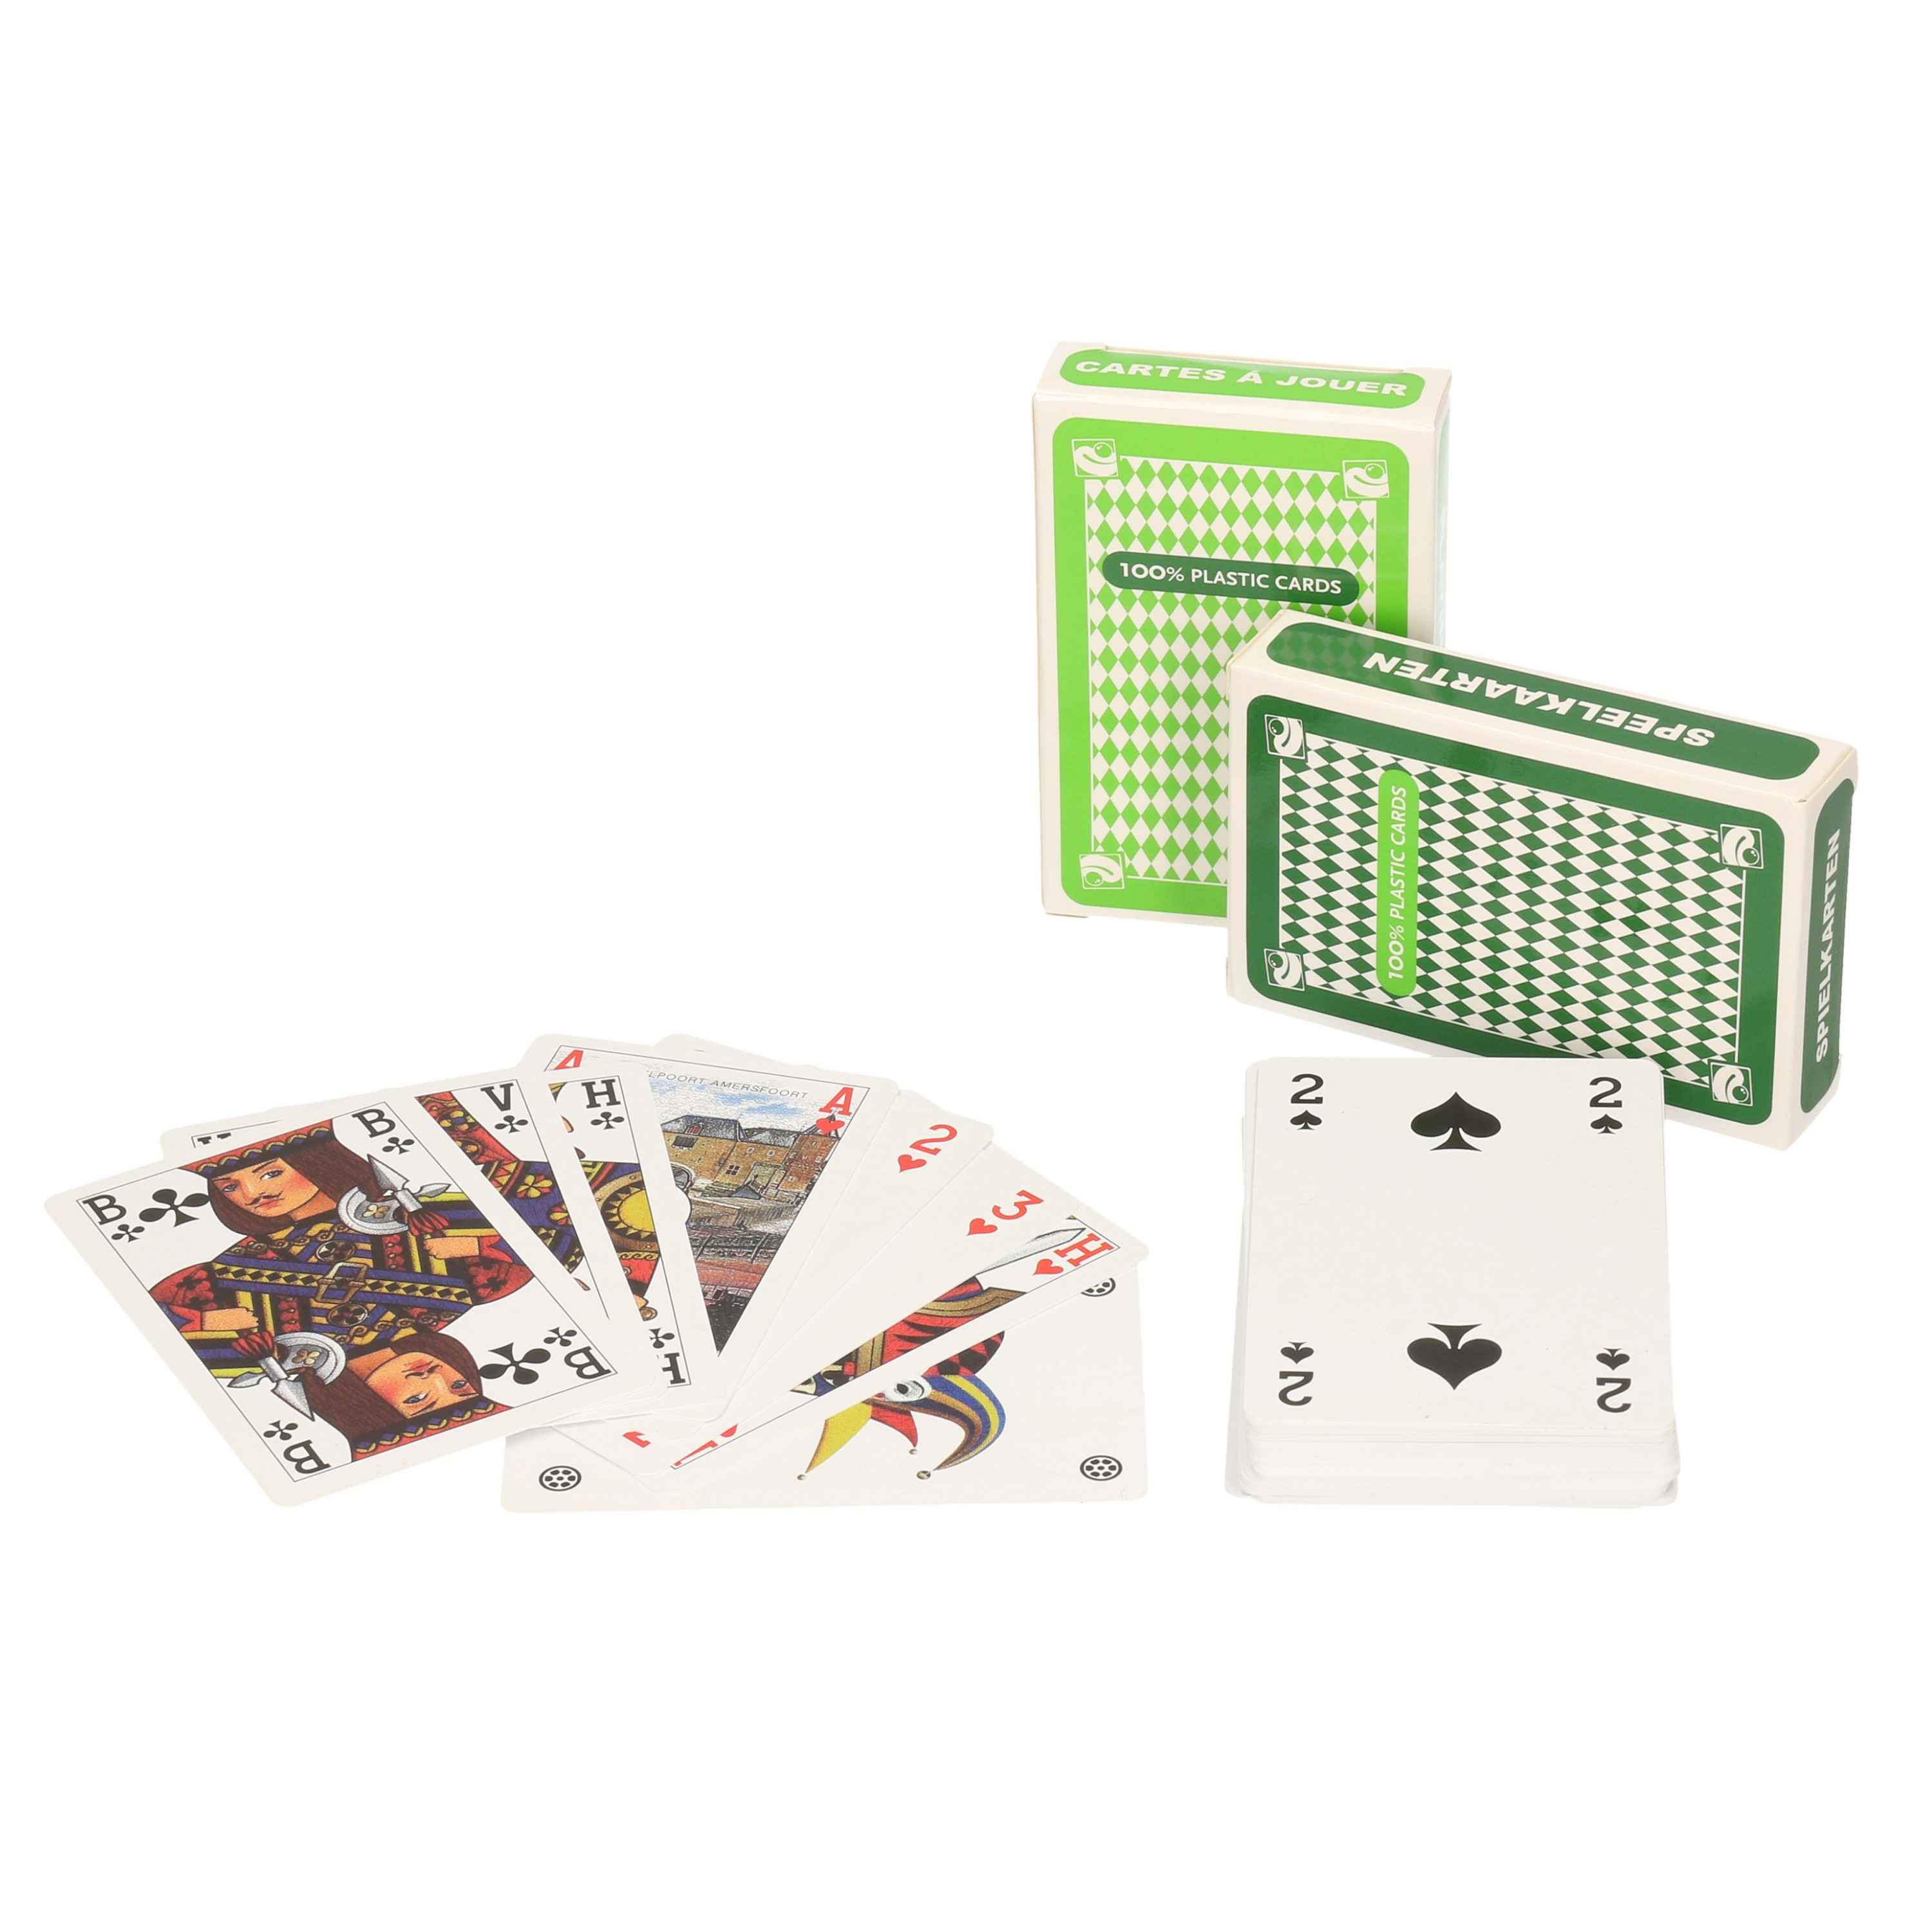 Set van 2x clown games speelkaarten lichtgroen en donkergroen plastic